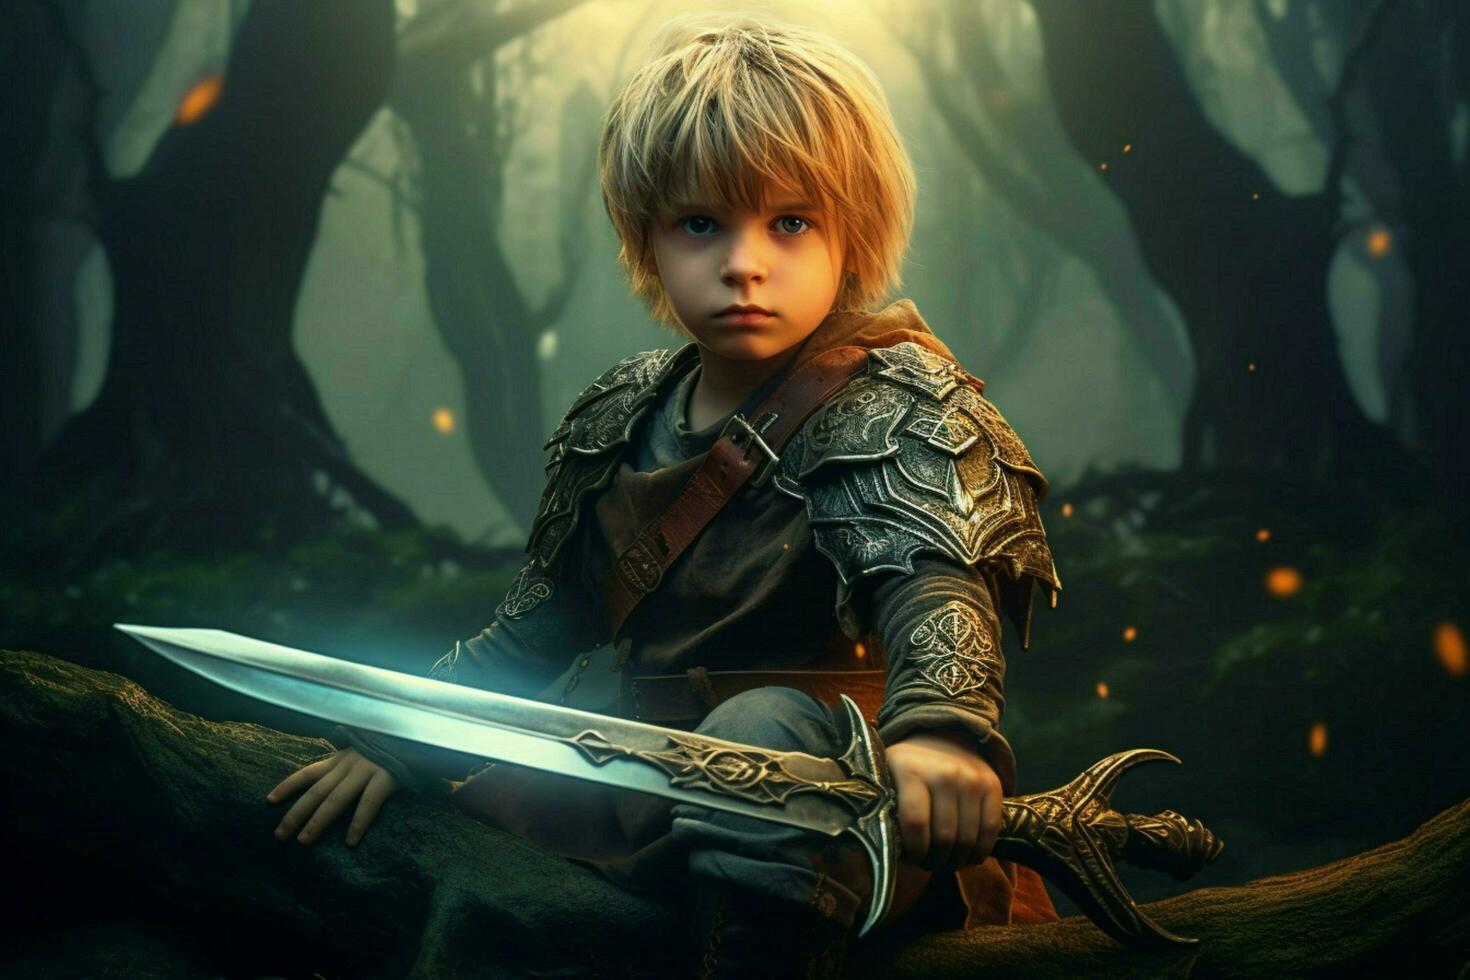 Guerreiro criança espada jogos fictício mundo foto